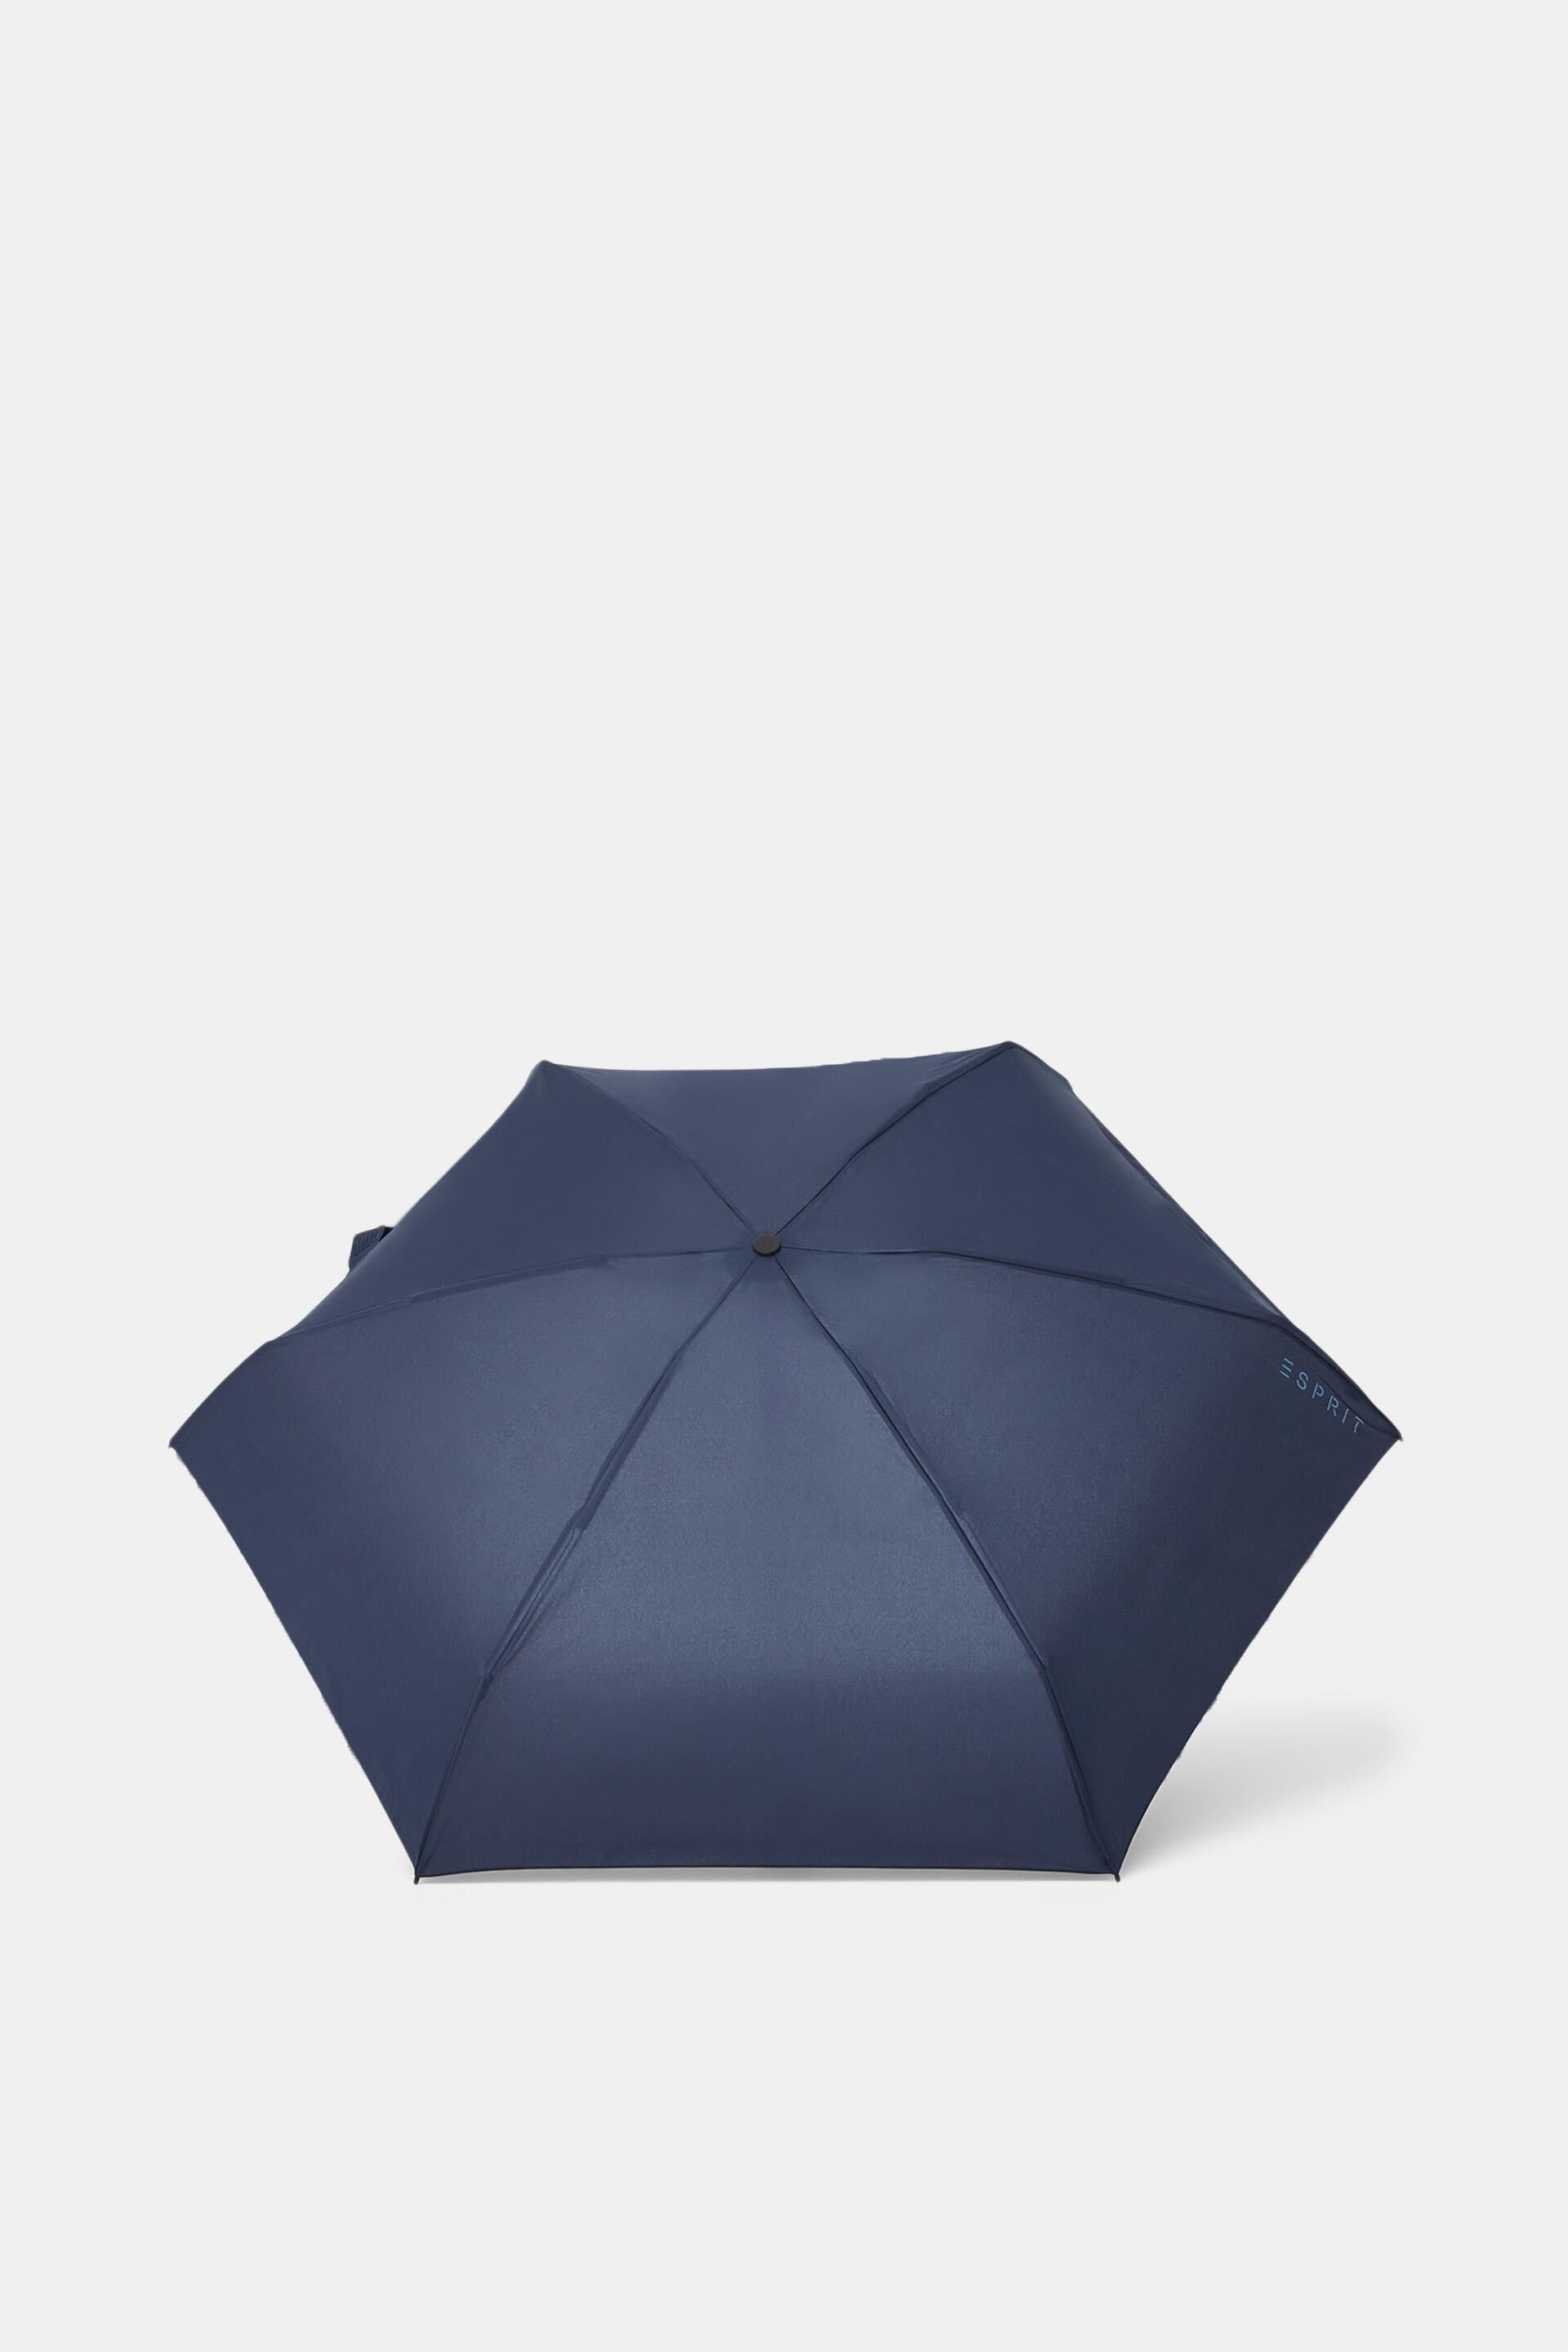 Esprit umbrella mini Plain pocket